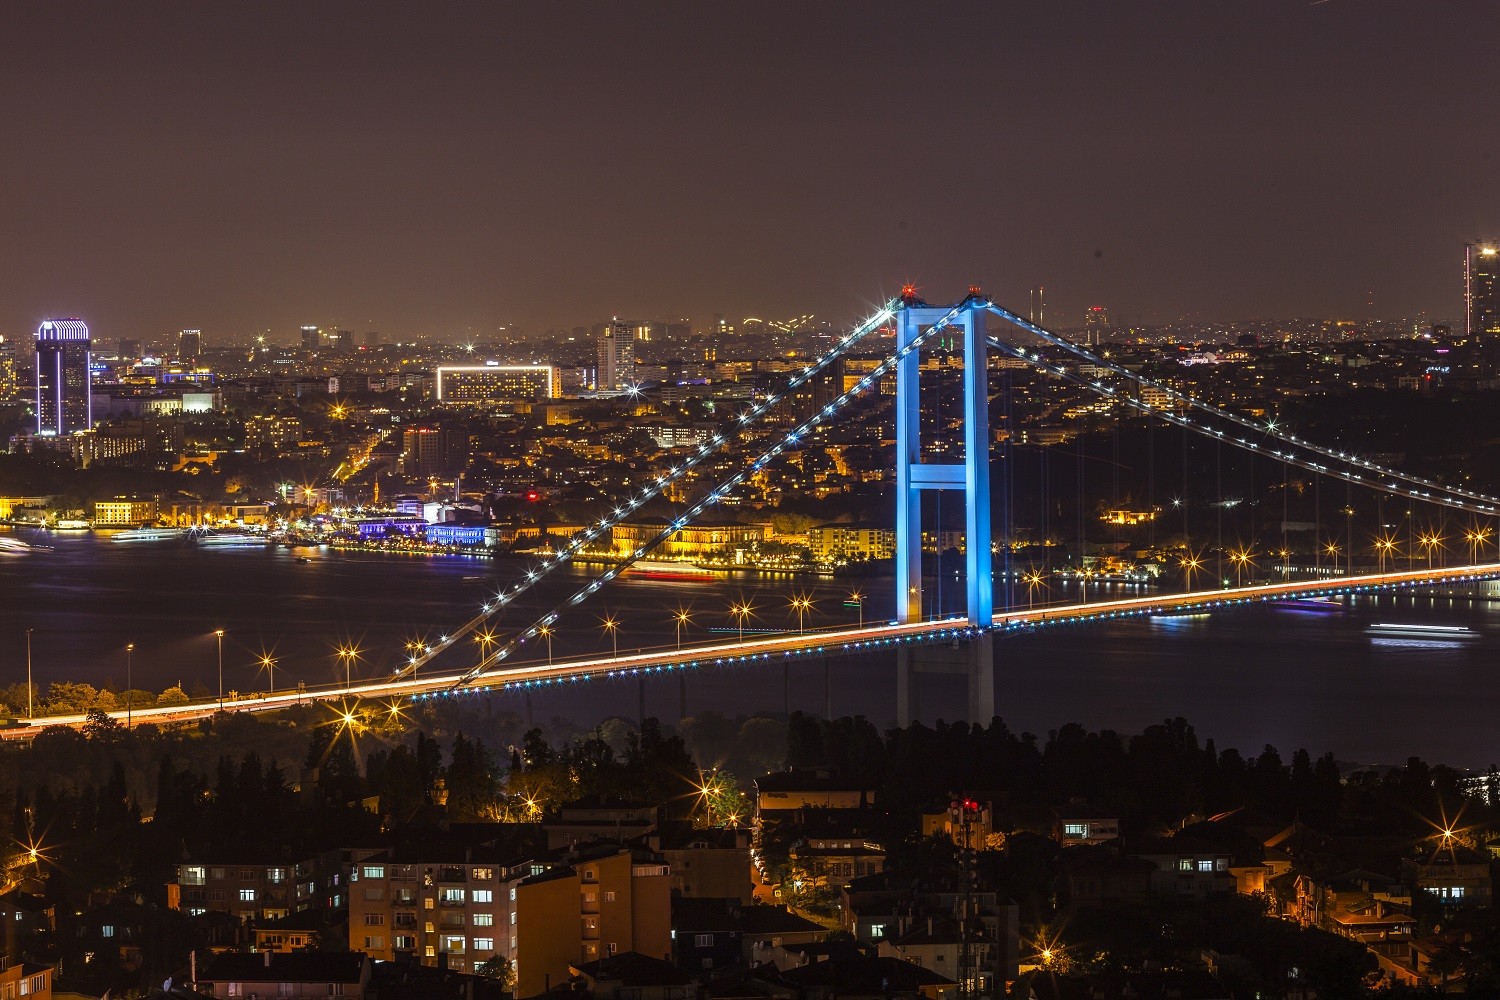 Die Martyrer-Brücke in Istanbul